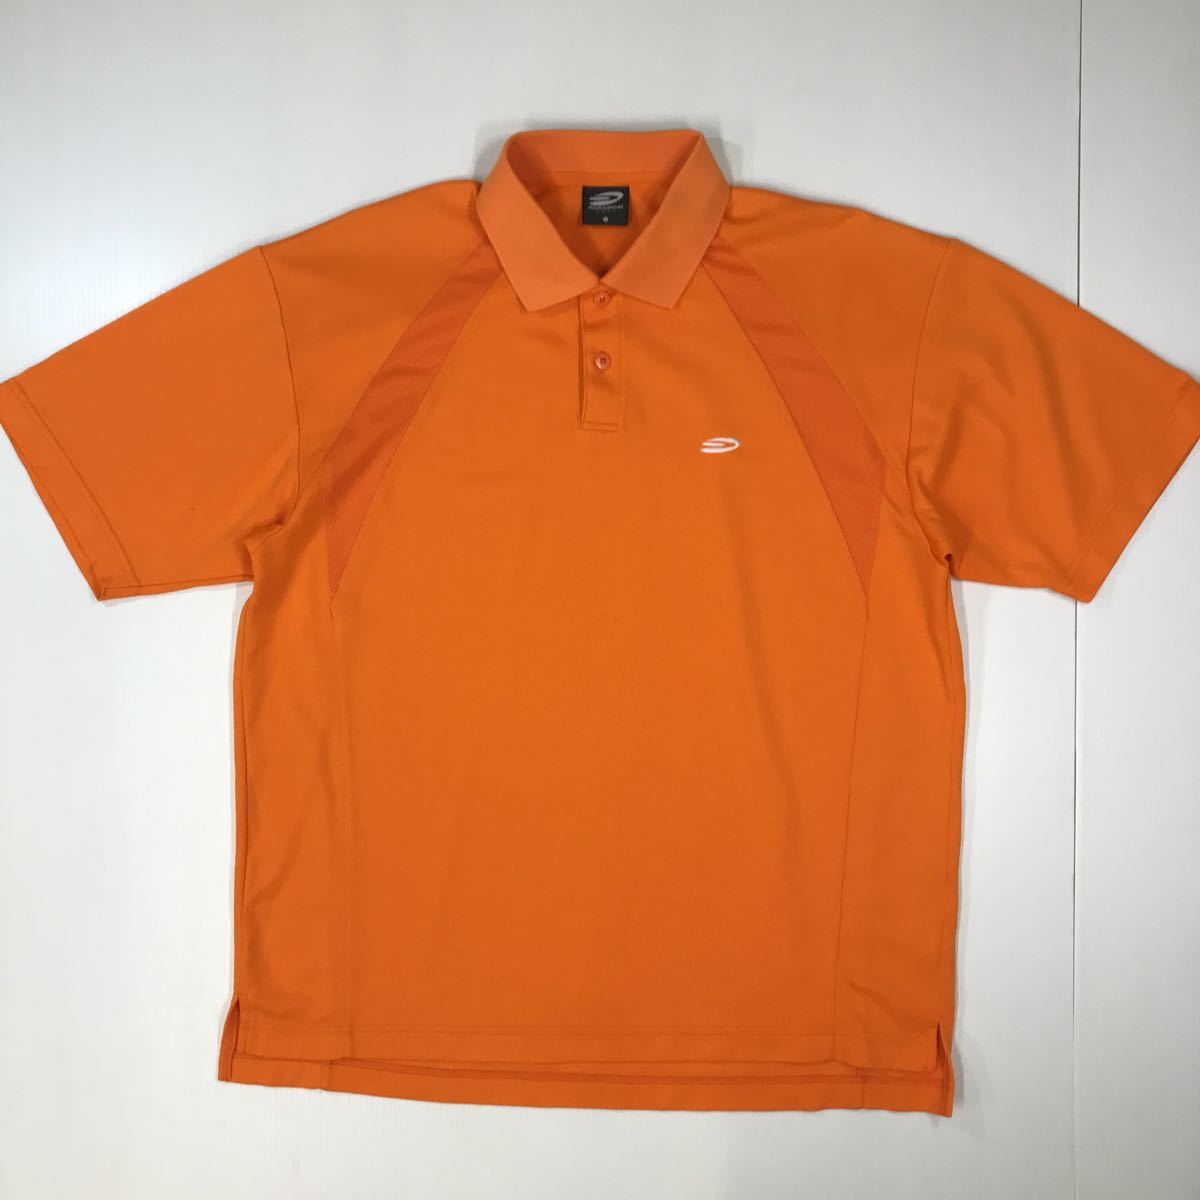 ● PARADISO GOLF パラディーソ 半袖 ポロシャツ メンズ Lサイズ ゴルフ ブリヂストン オレンジ 26-49aの画像1